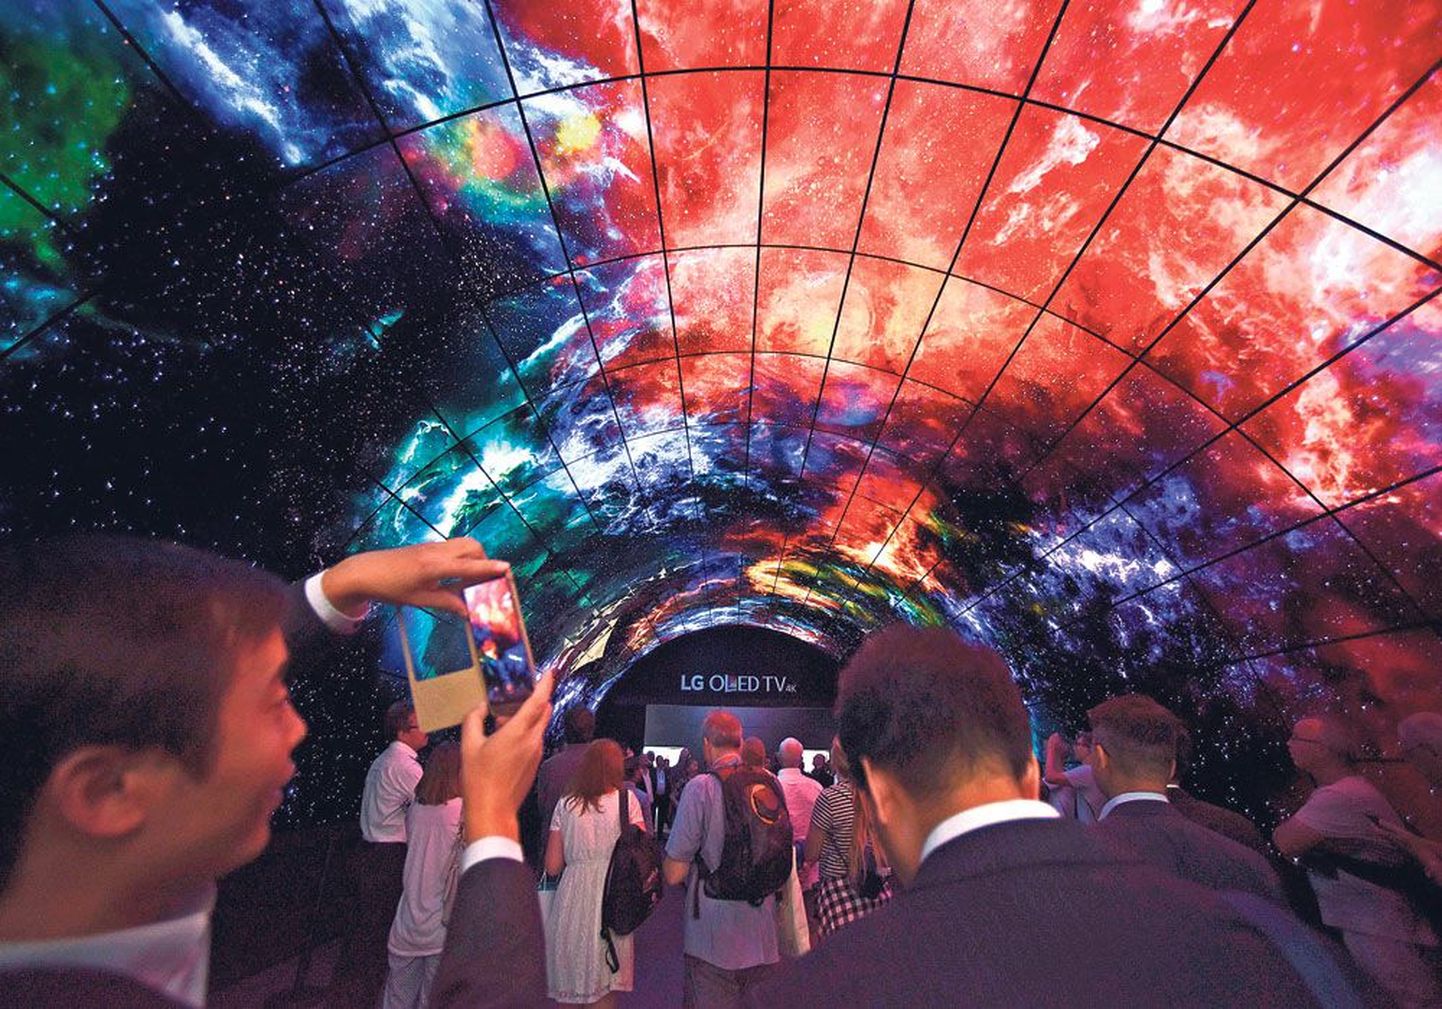 Прежде чем попасть на выставку, гости должны были пройти по туннелю, построенному южнокорейской фирмой LG из 216 изогнутых 55-дюймовых дисплеев OLED.